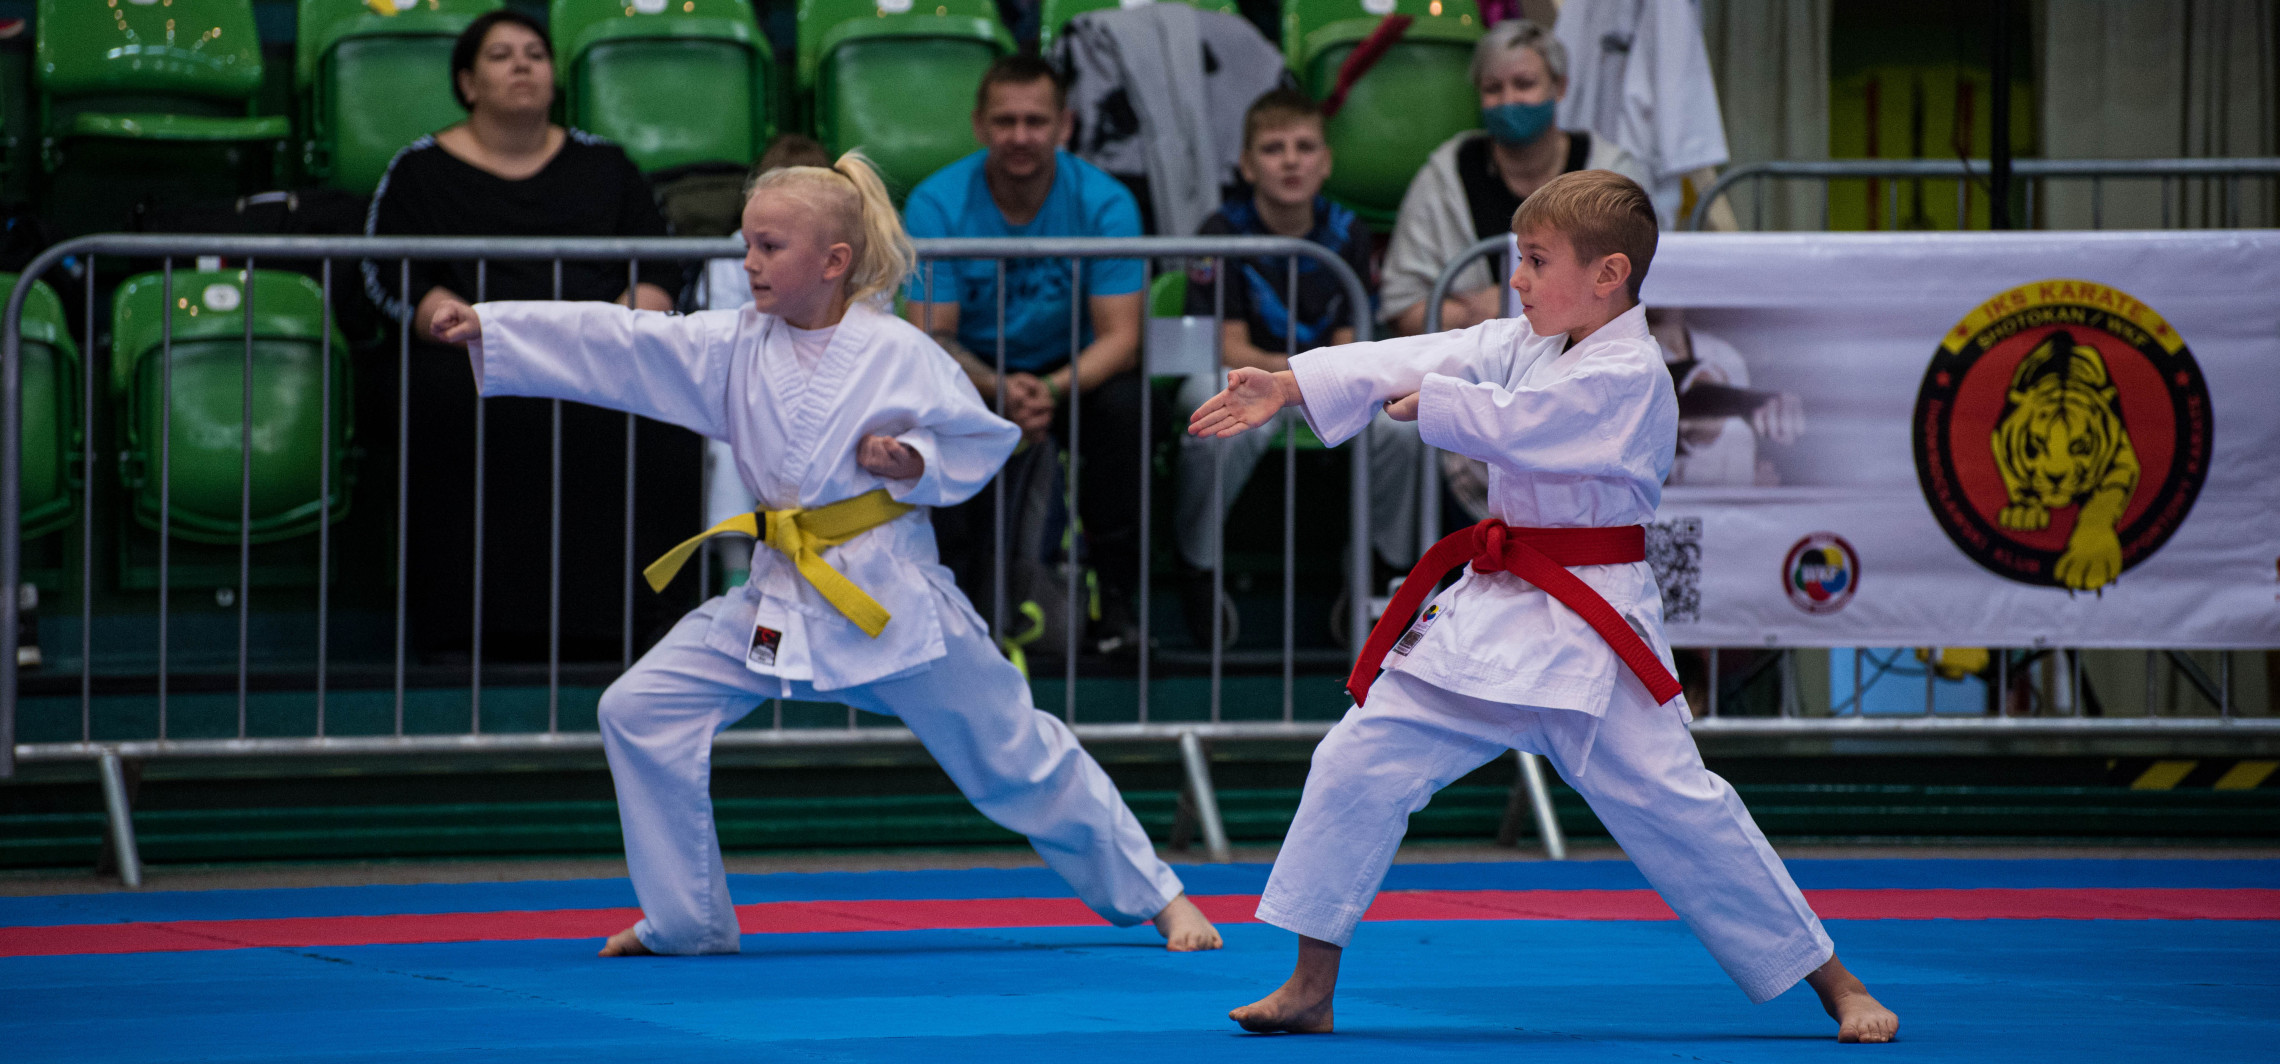 Inowrocław - W Inowrocławiu trwa turniej karate